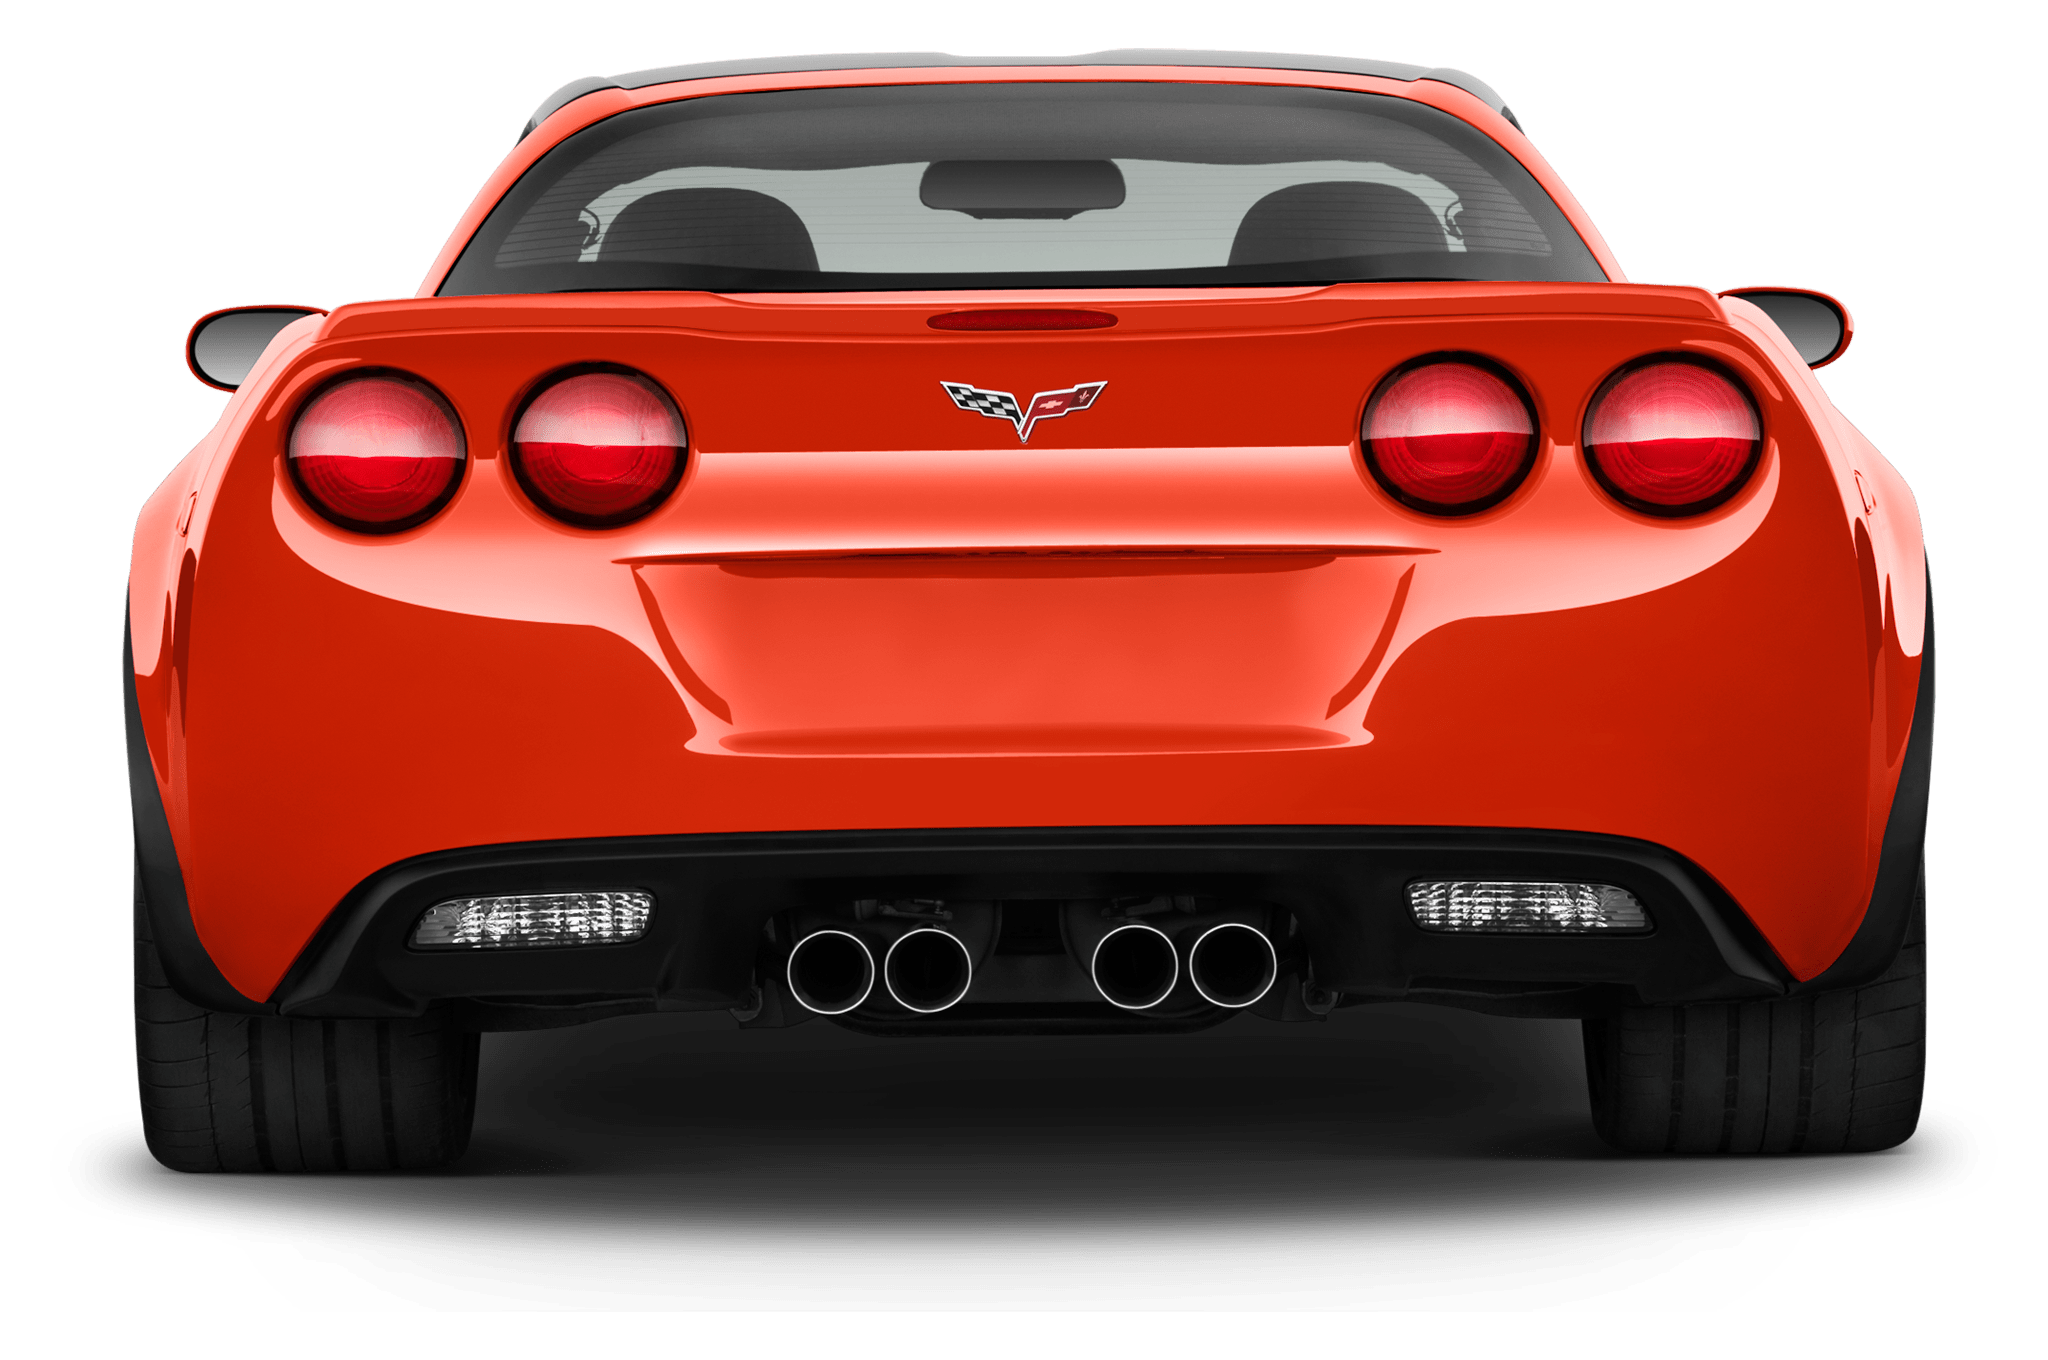 Mobil Corvette Merah PNG Gambar Berkualitas Tinggi